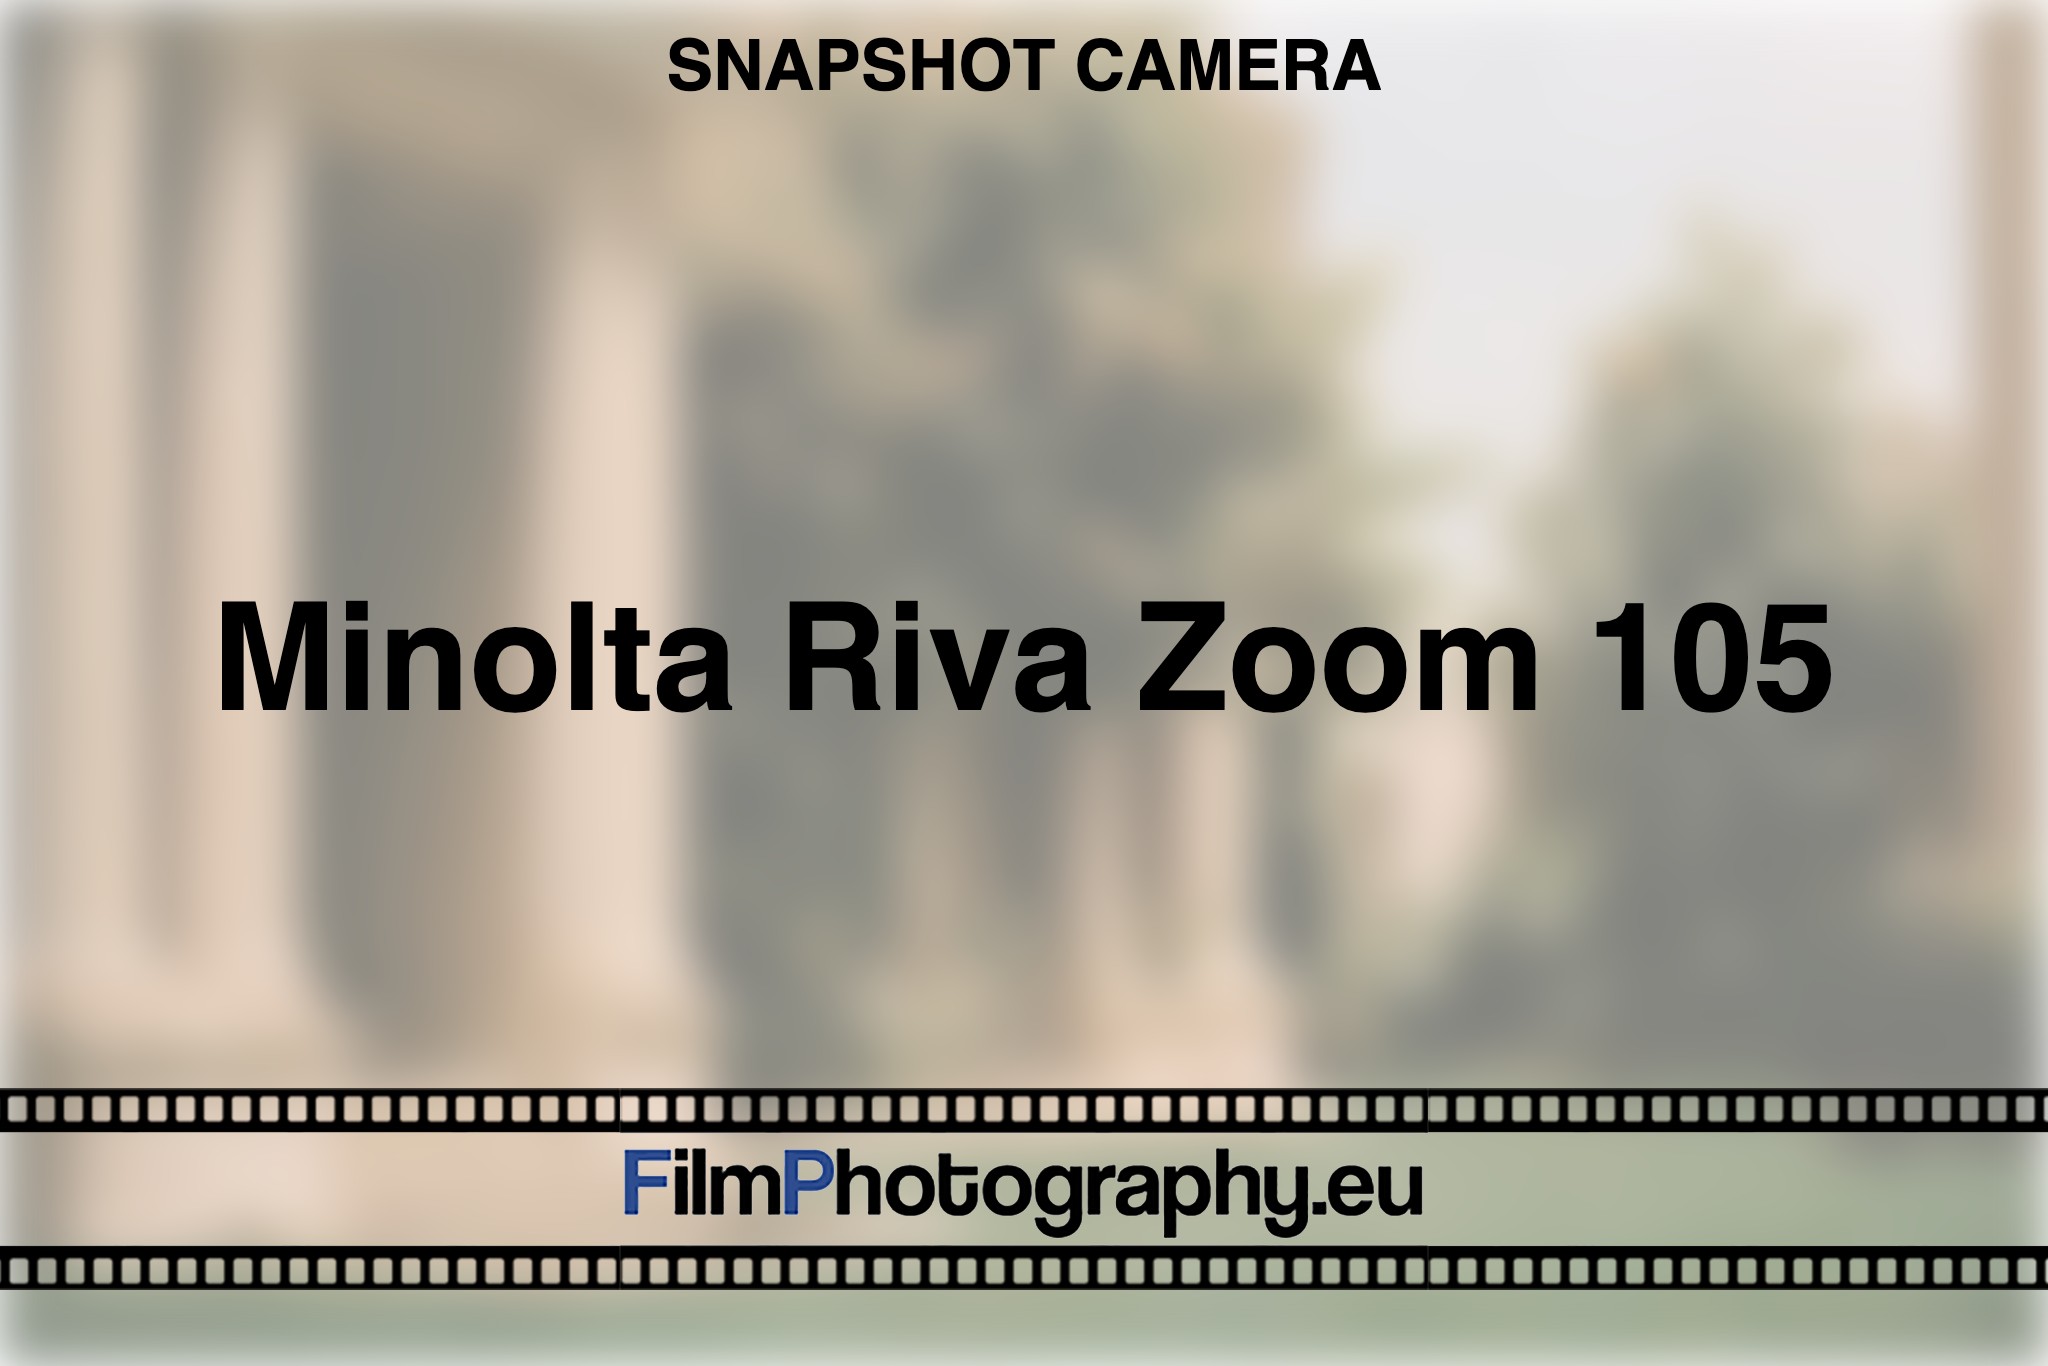 minolta-riva-zoom-105-snapshot-camera-bnv